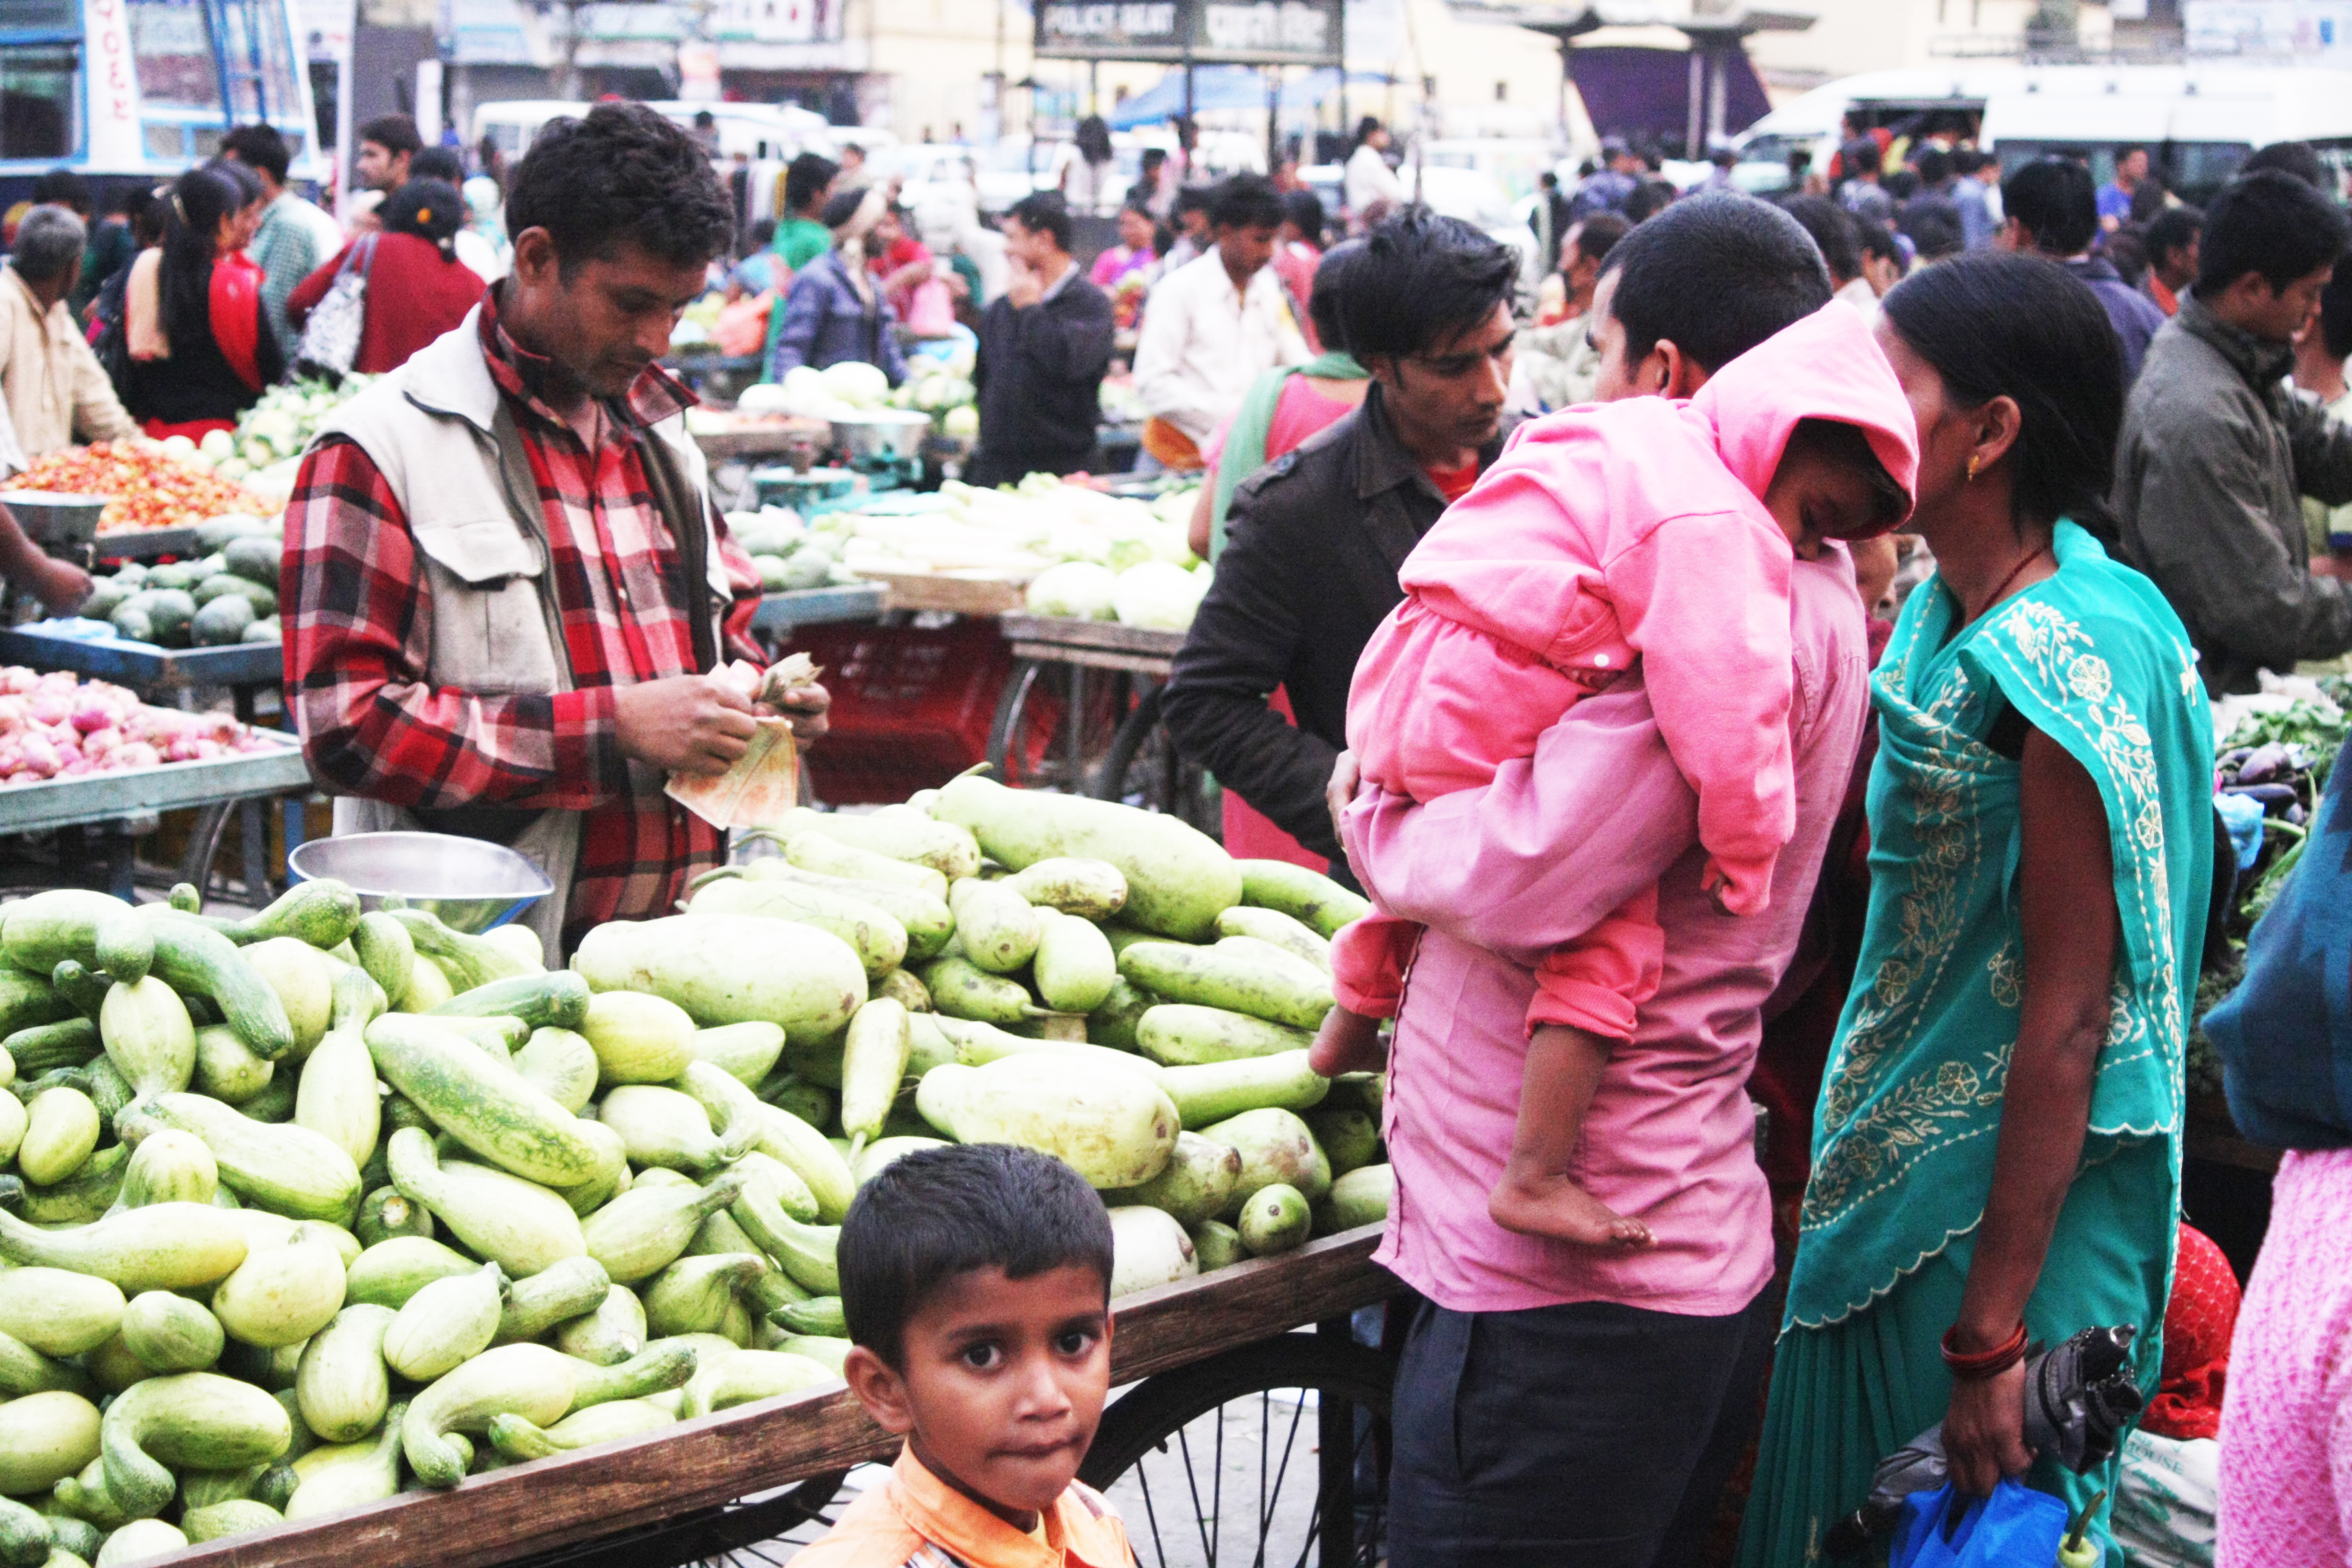 Markt in Kathmandu